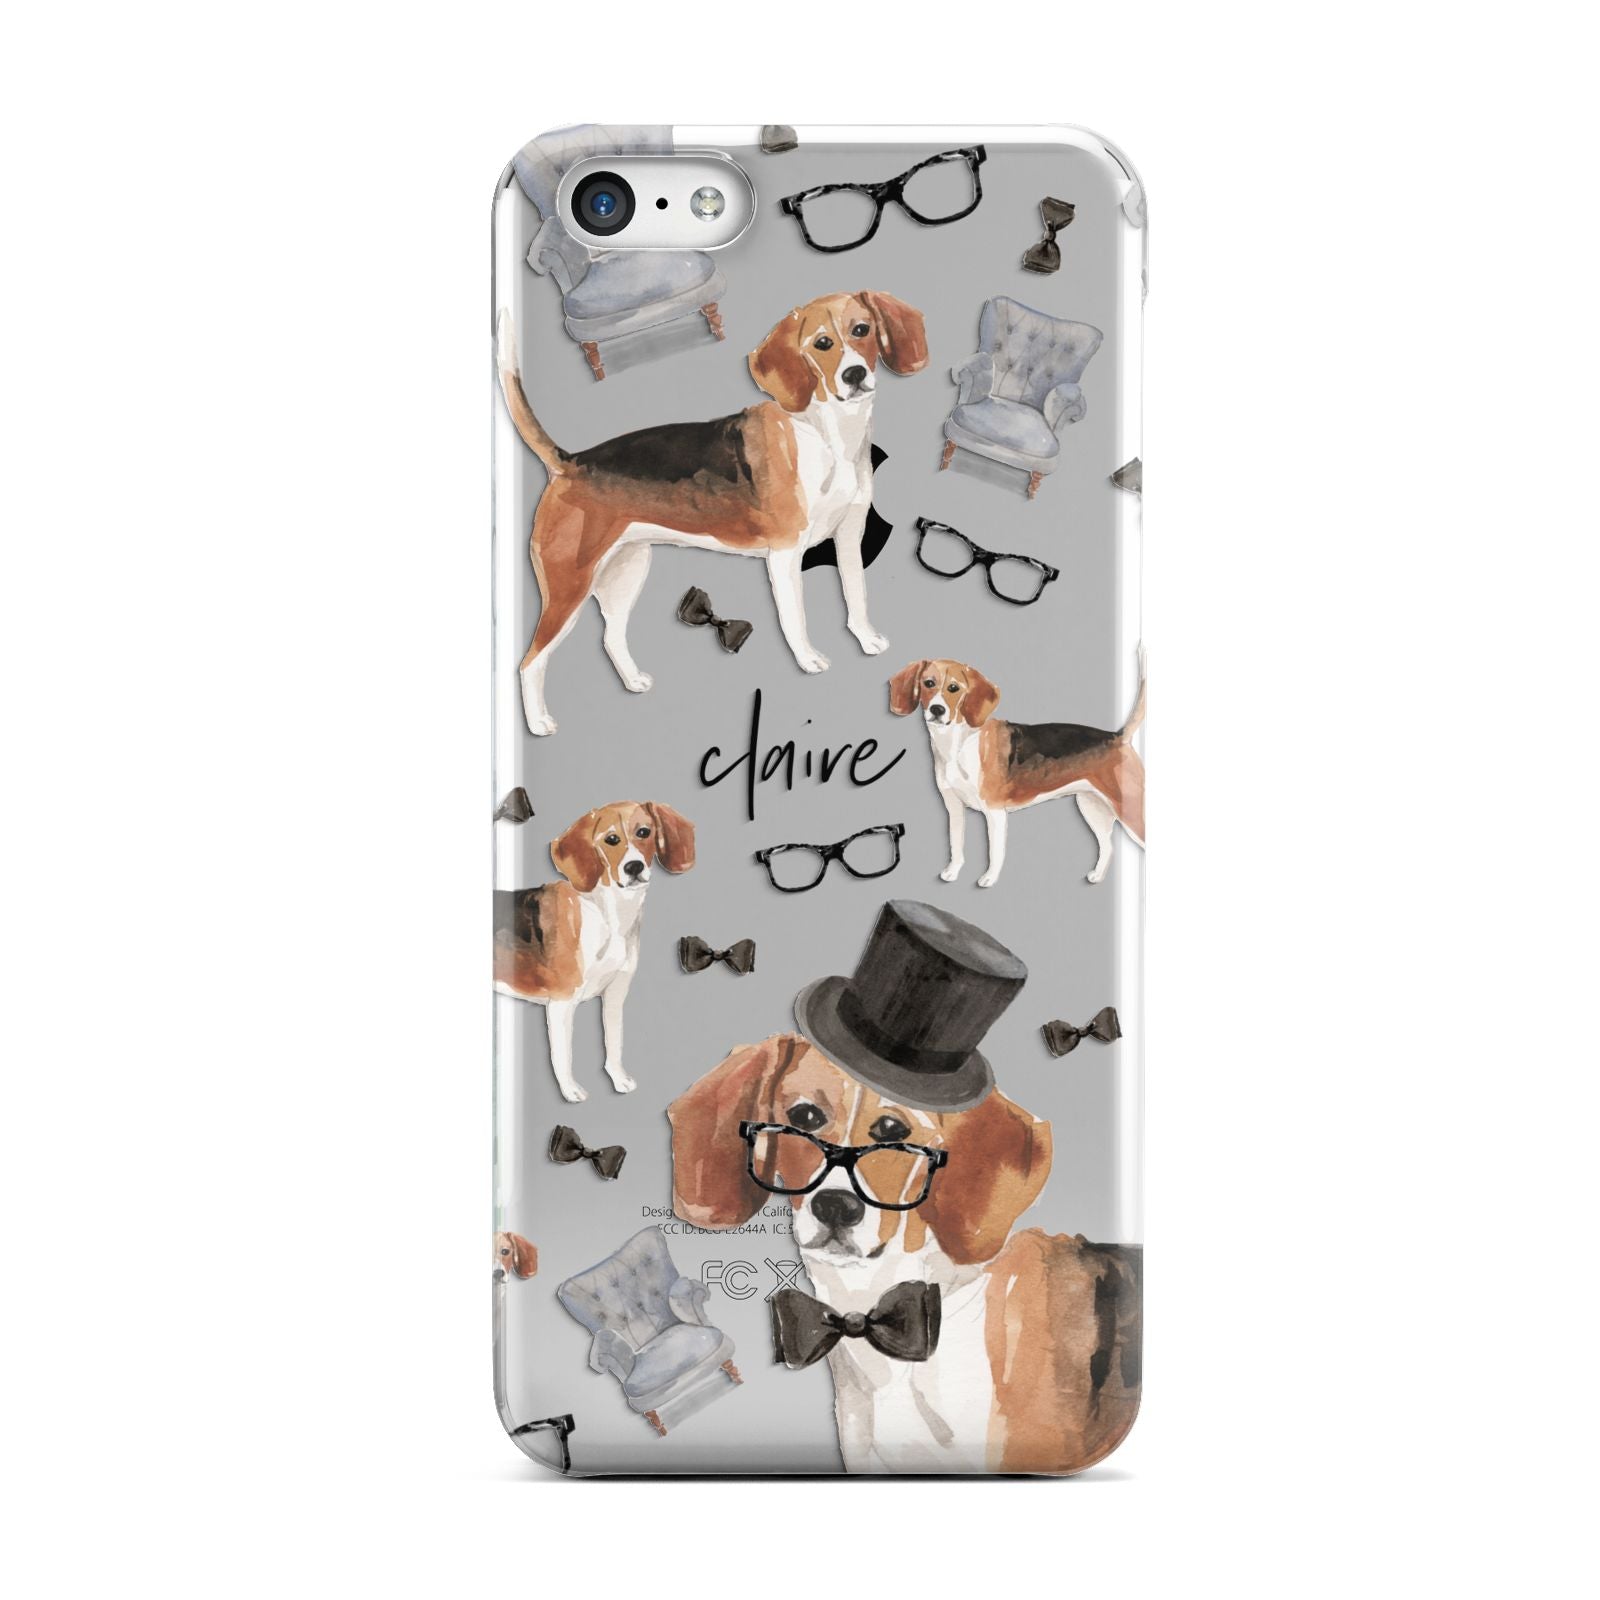 Personalised Beagle Dog Apple iPhone 5c Case